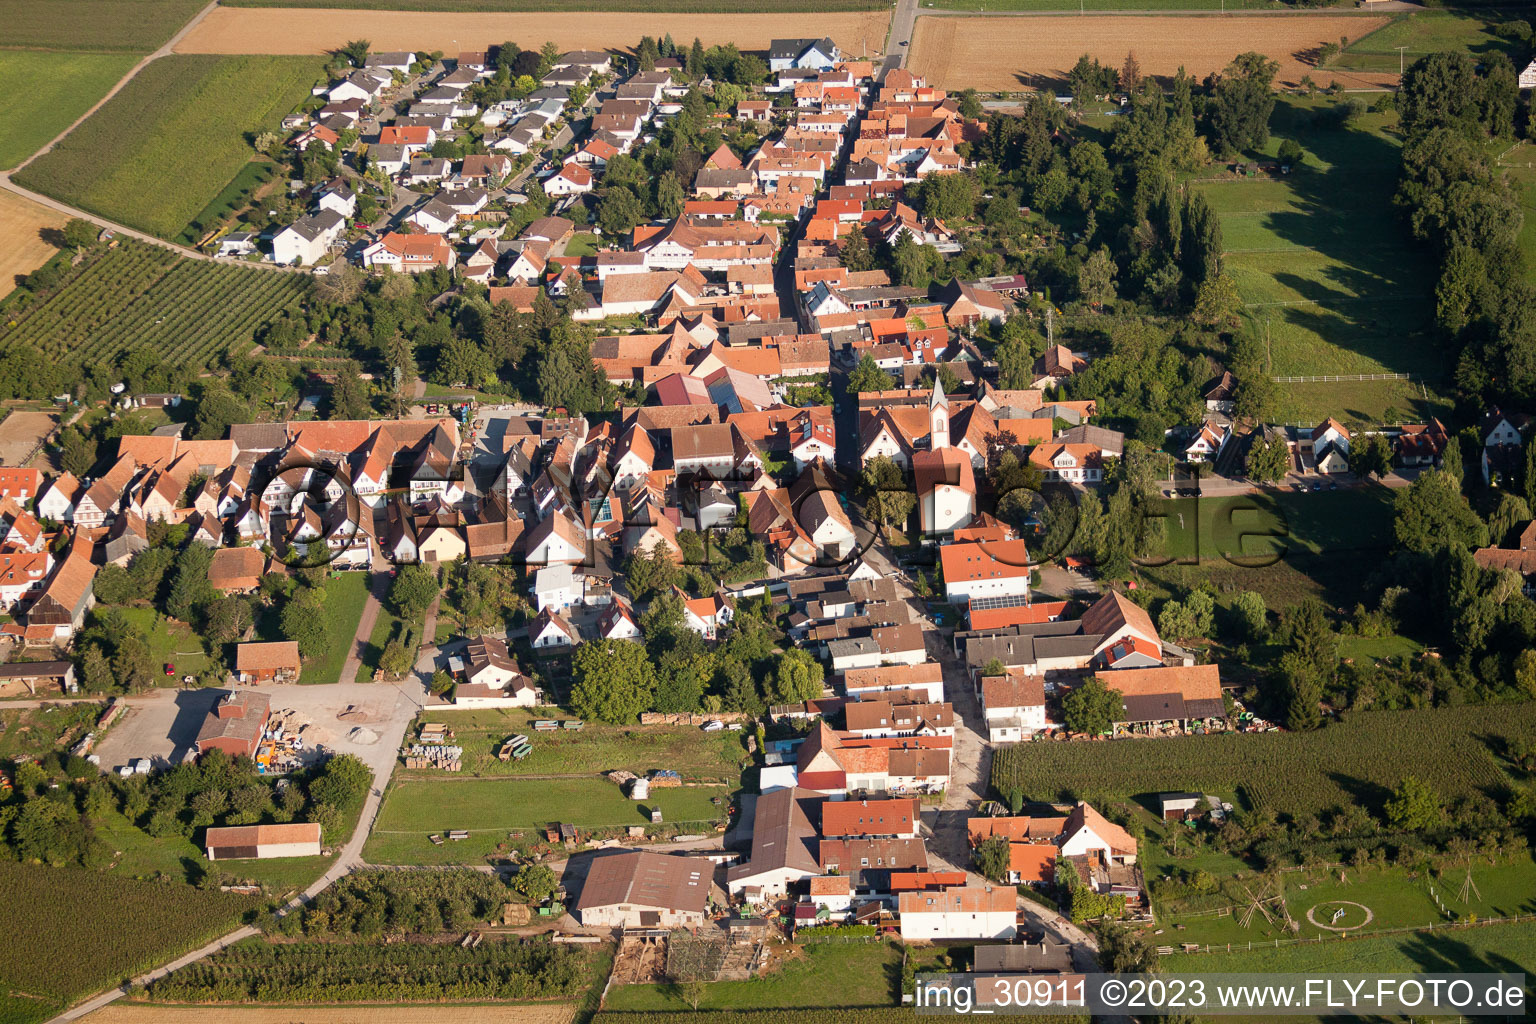 Bird's eye view of District Mühlhofen in Billigheim-Ingenheim in the state Rhineland-Palatinate, Germany